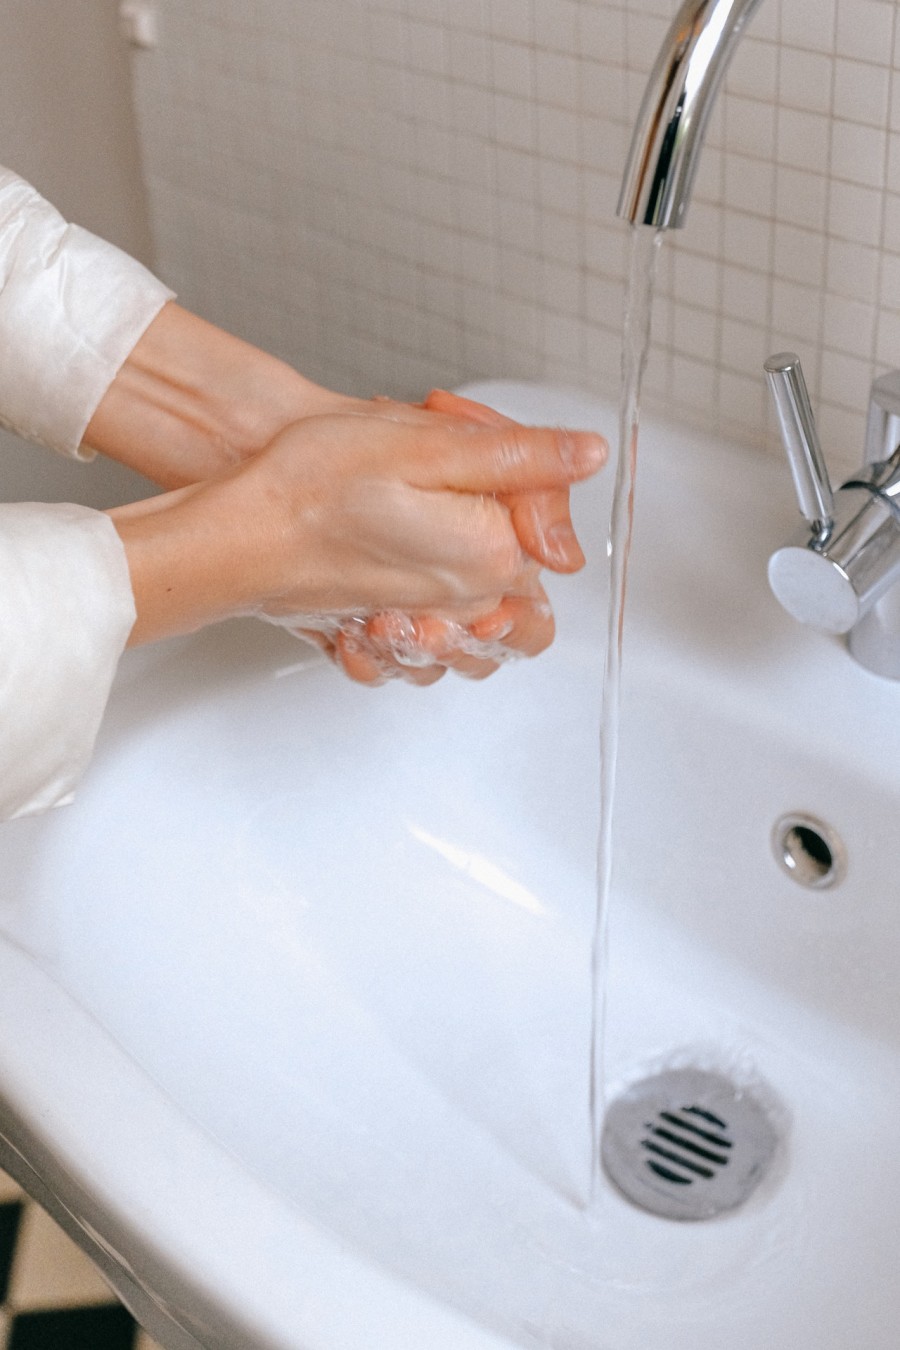 pexels.com | Редкое мытье рук